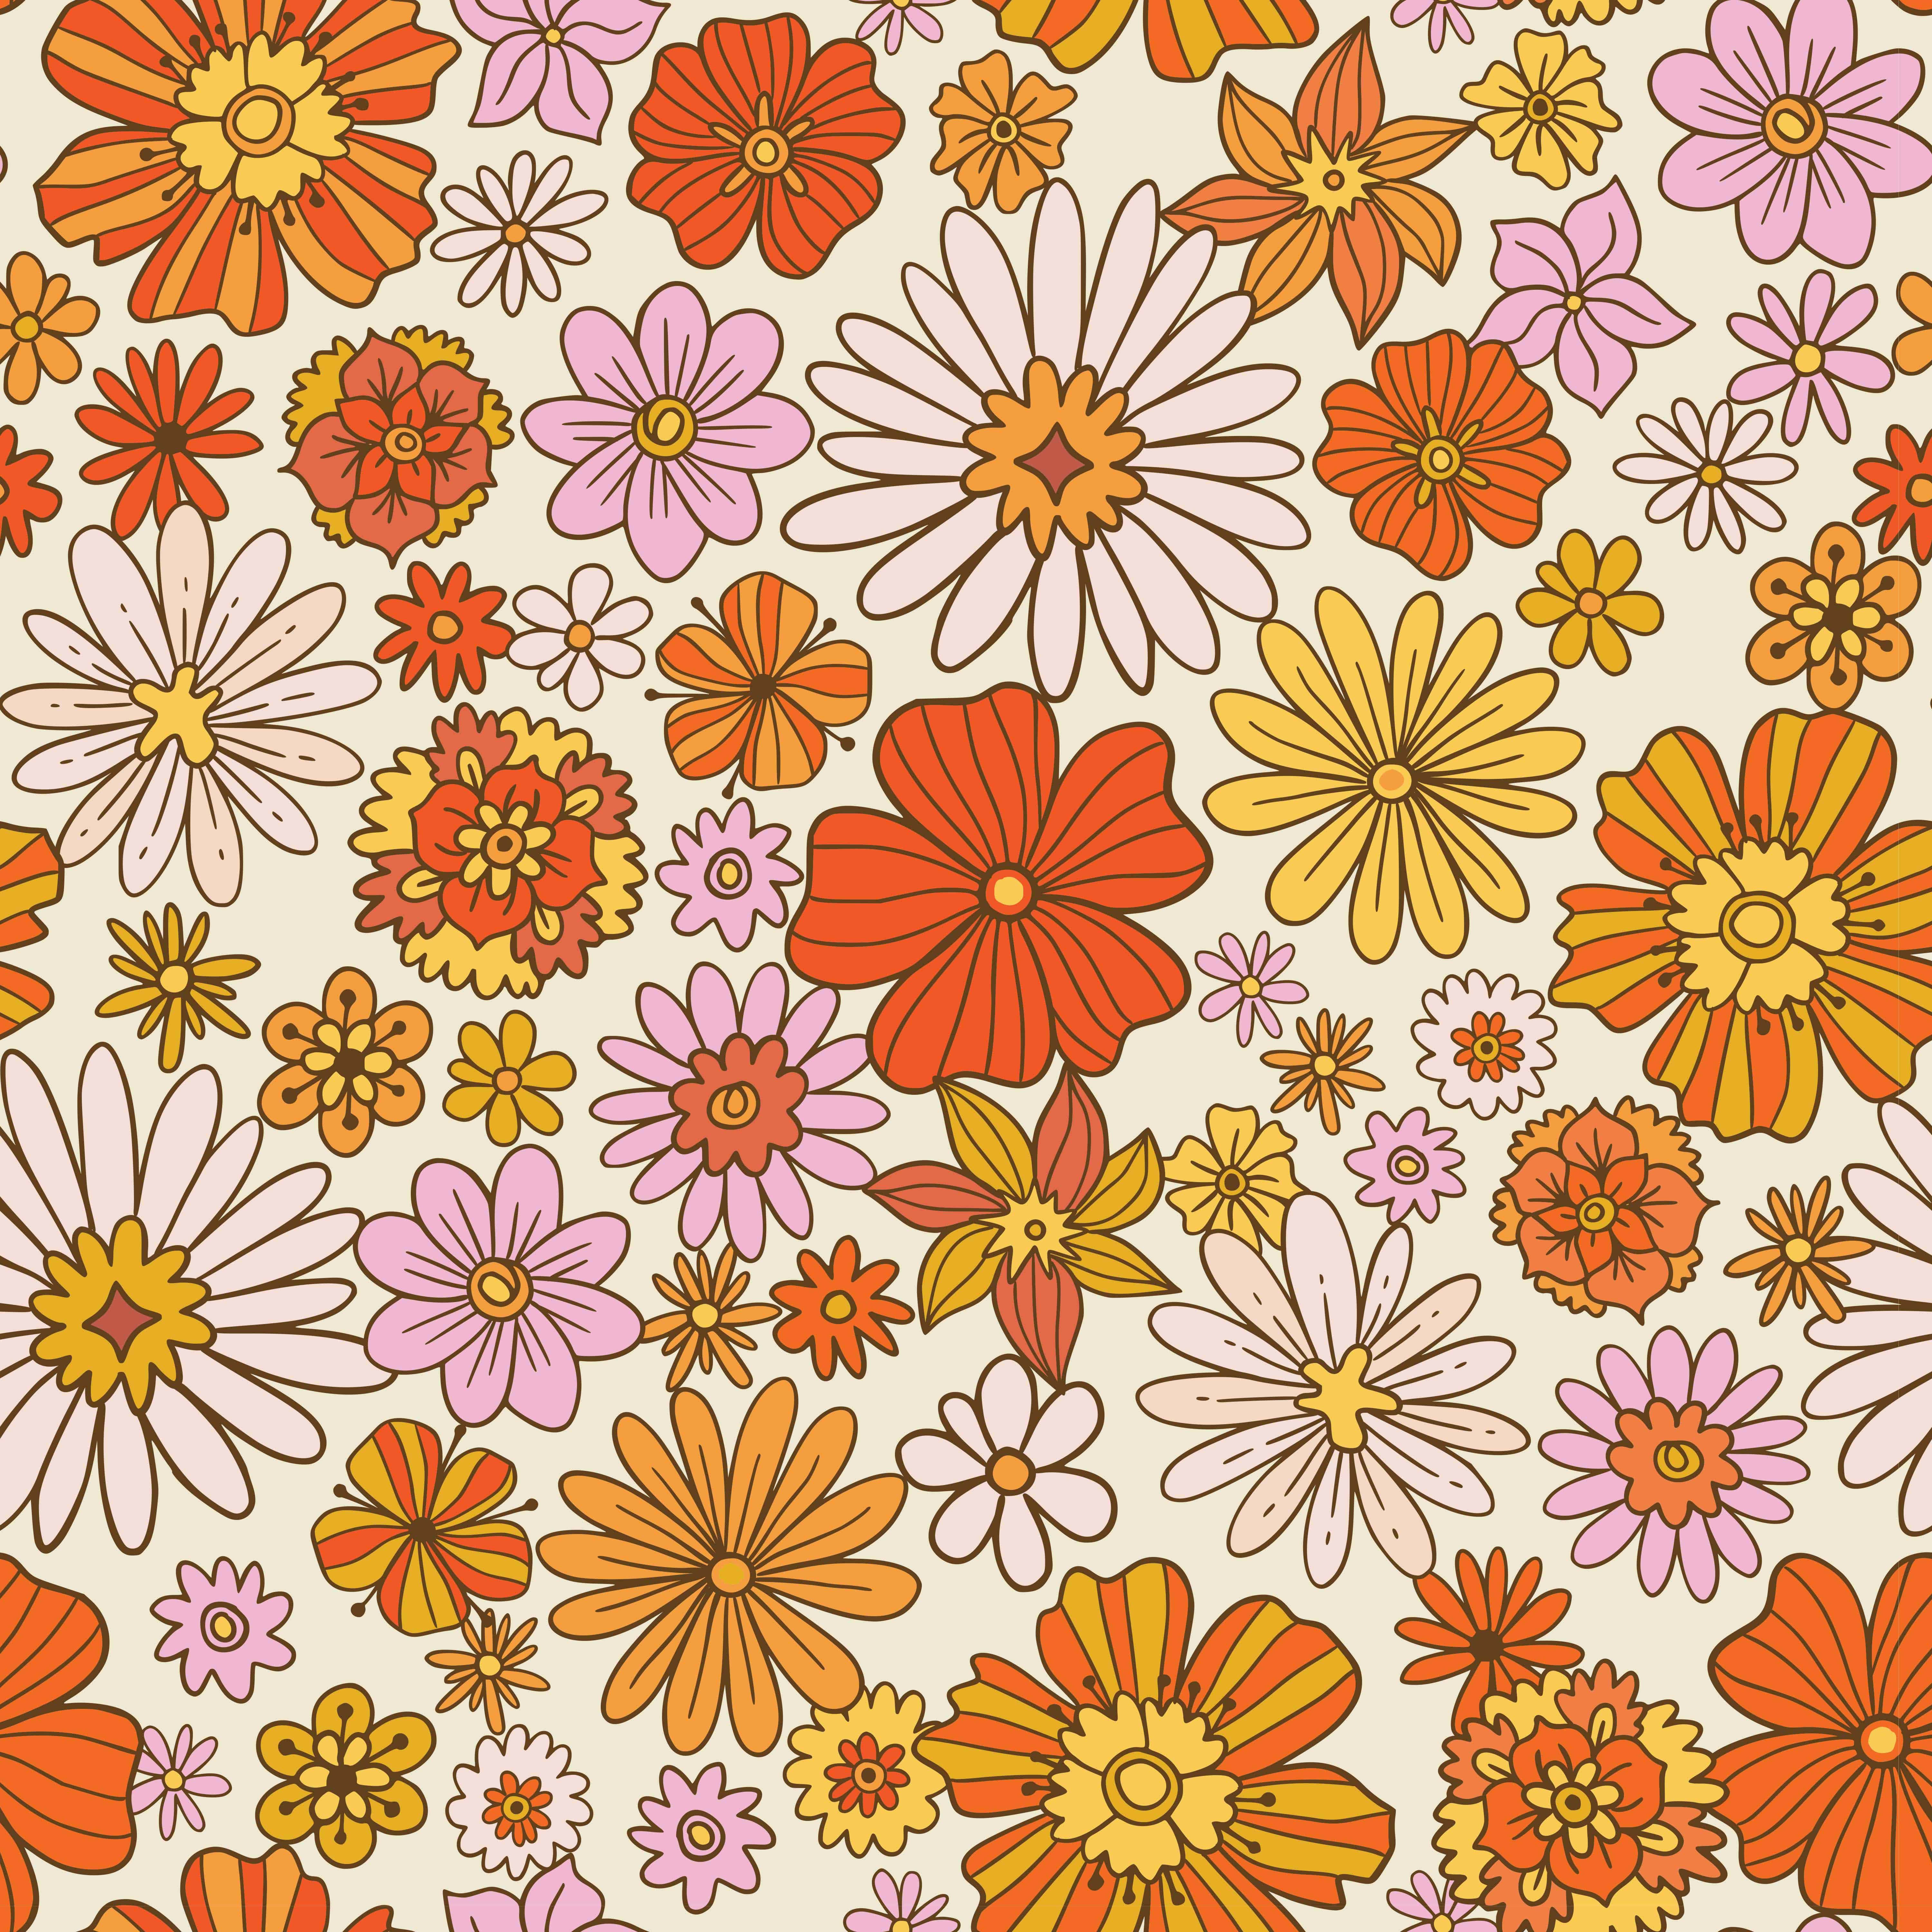 Vải in hoa kiểu Retro - một phong cách khơi gợi sự tưởng tượng và khí thế của thập niên